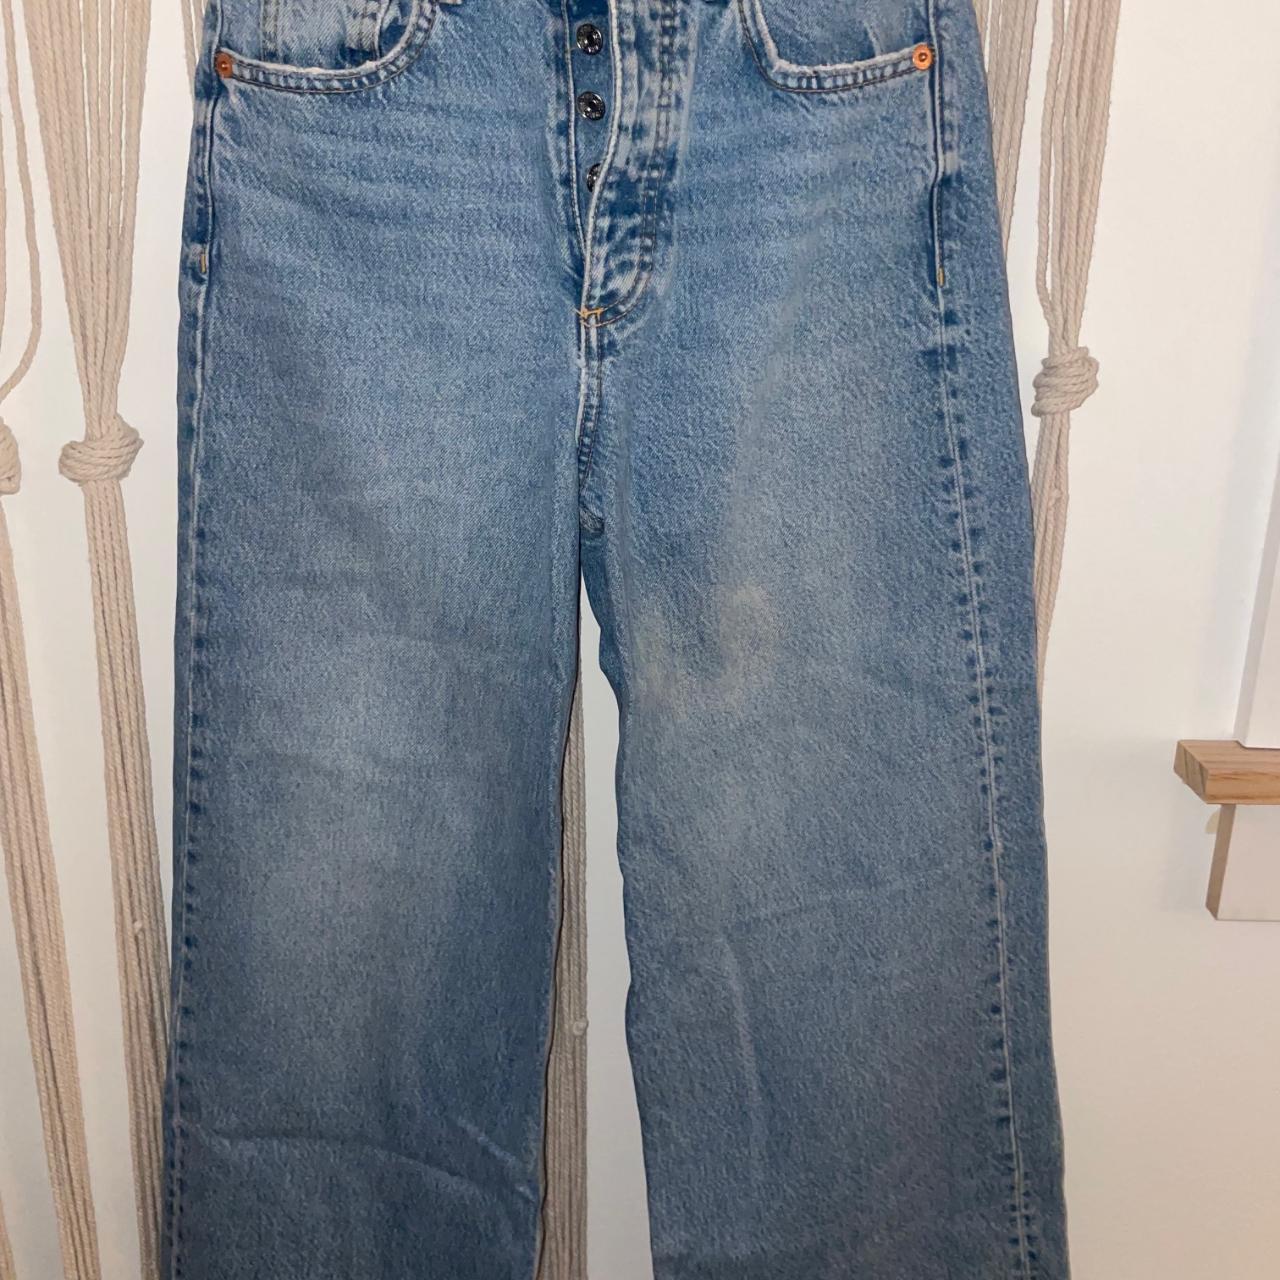 Zara wide leg, light wash jeans - Depop